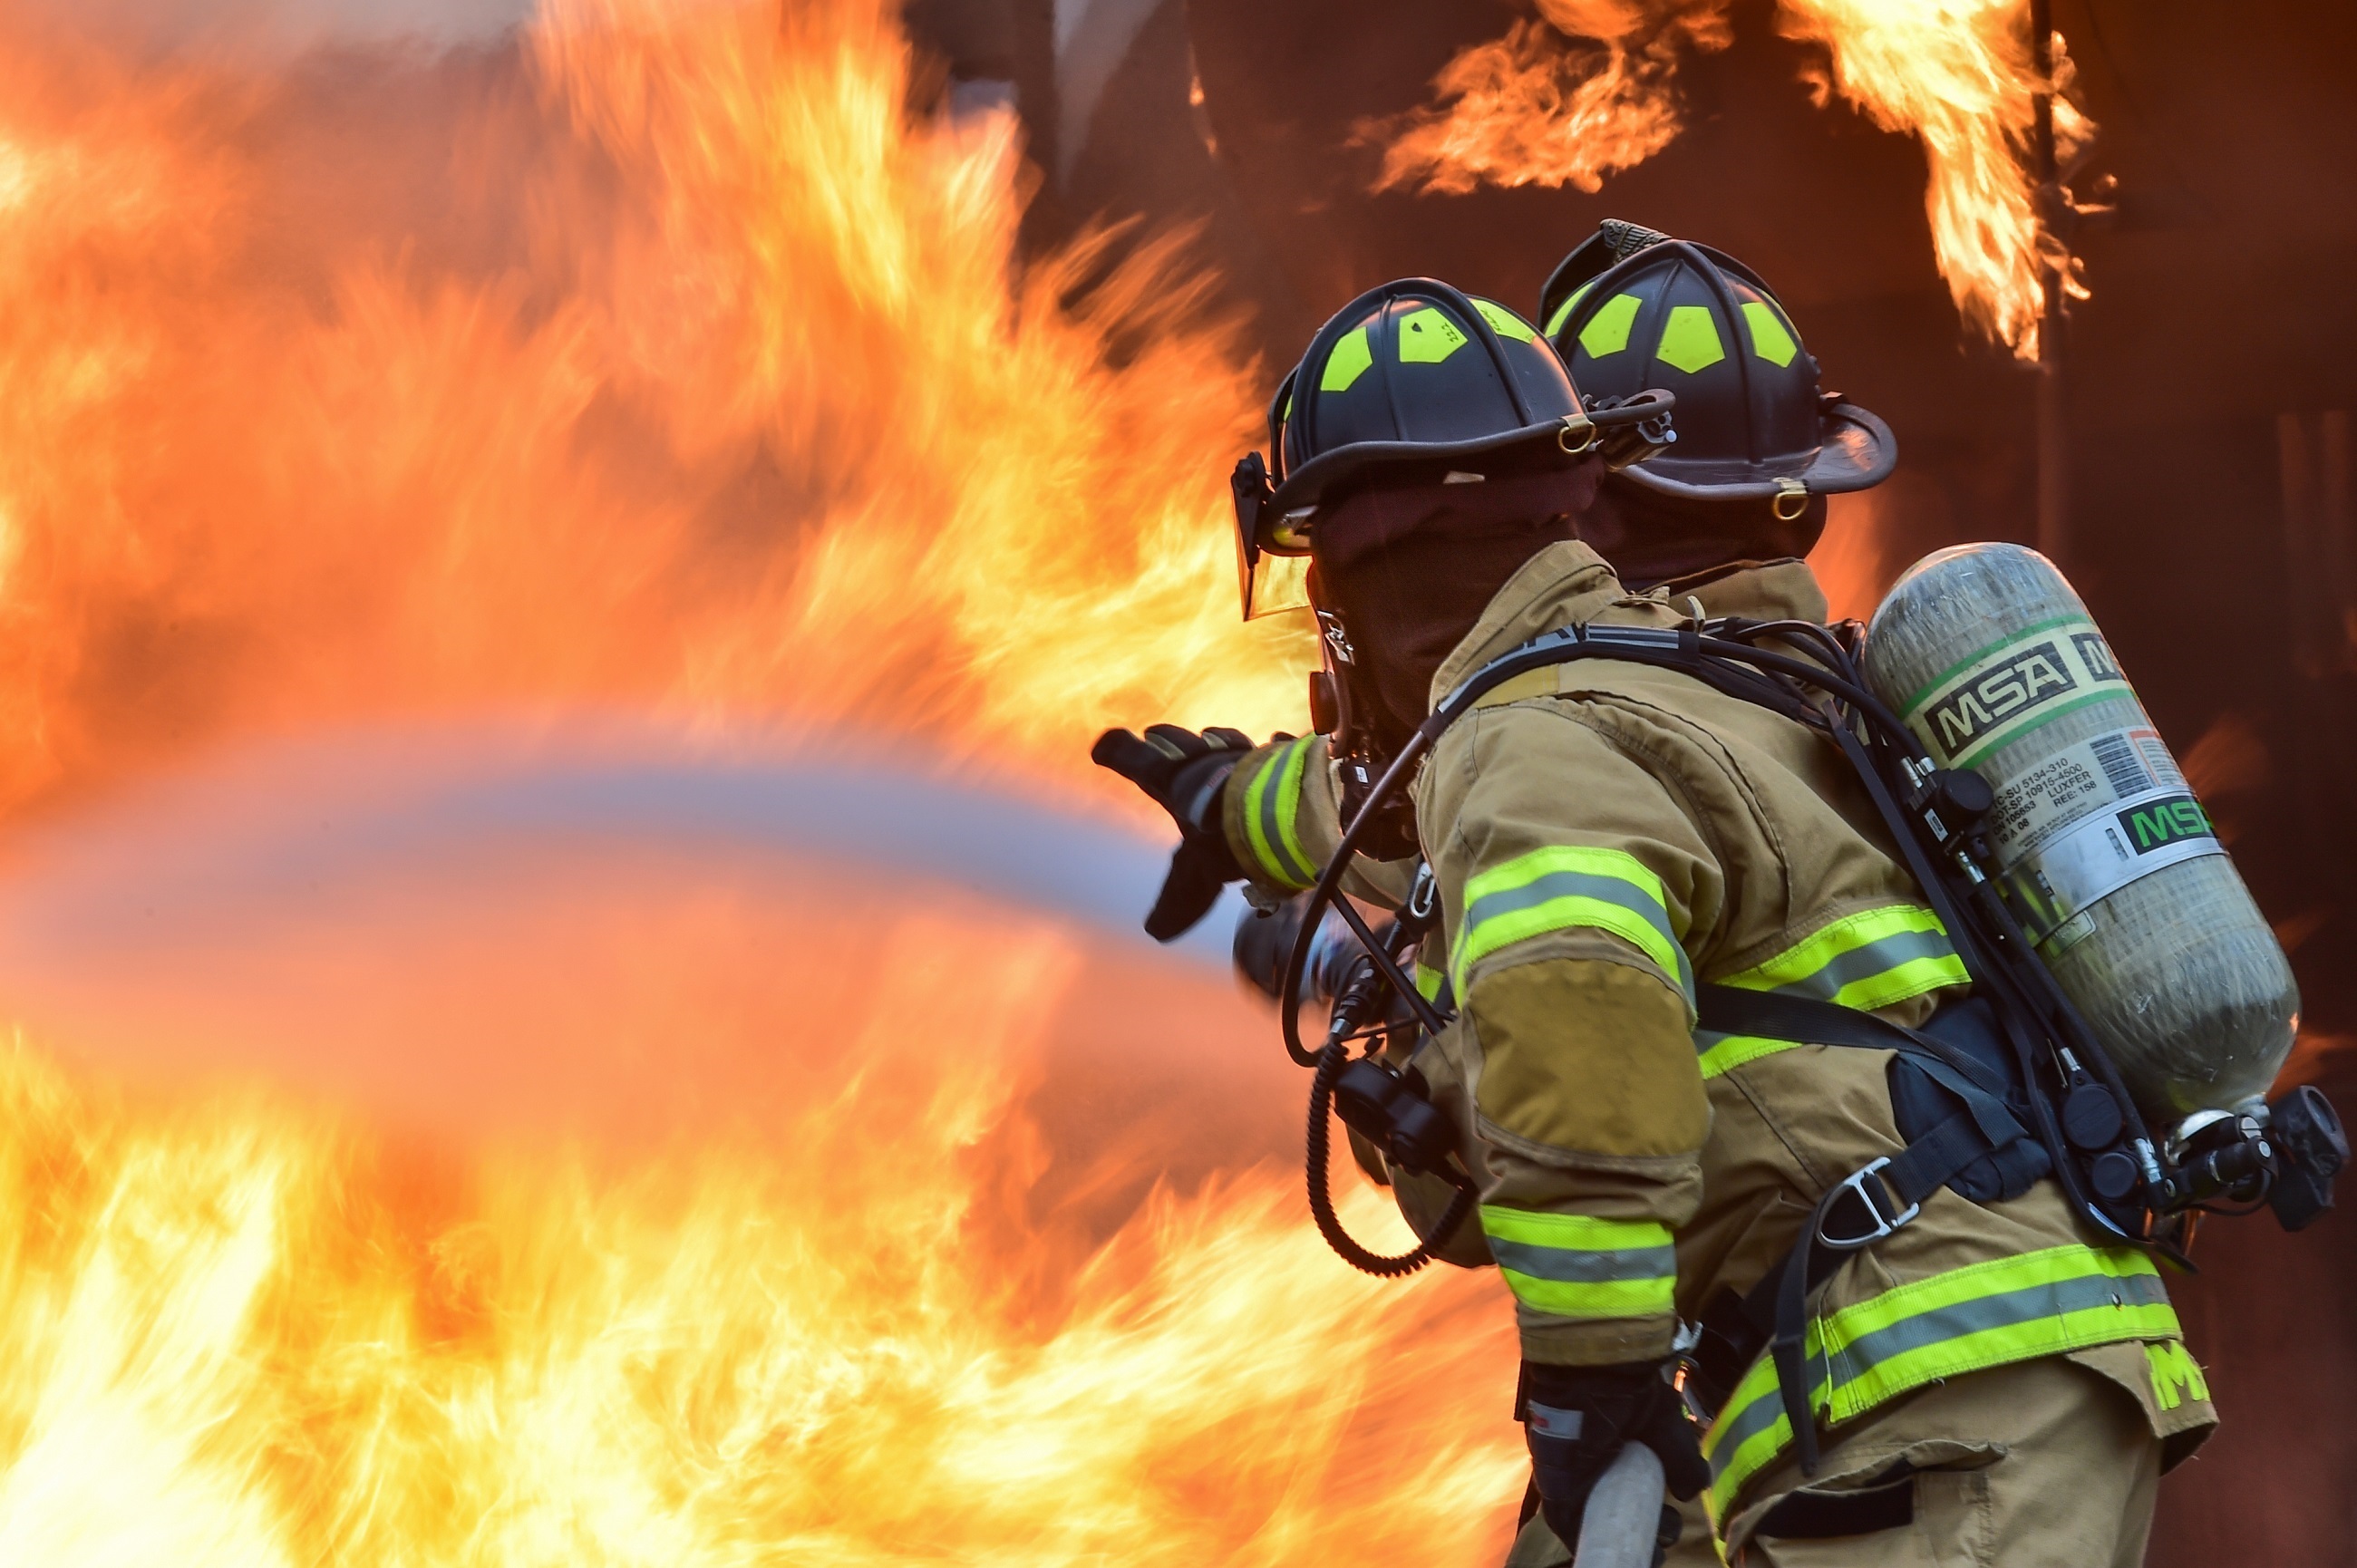 Pracovné nehorľavé oblečenie a obuv pre hasičov a požiarnikov - Pracovné odevy ZIGO